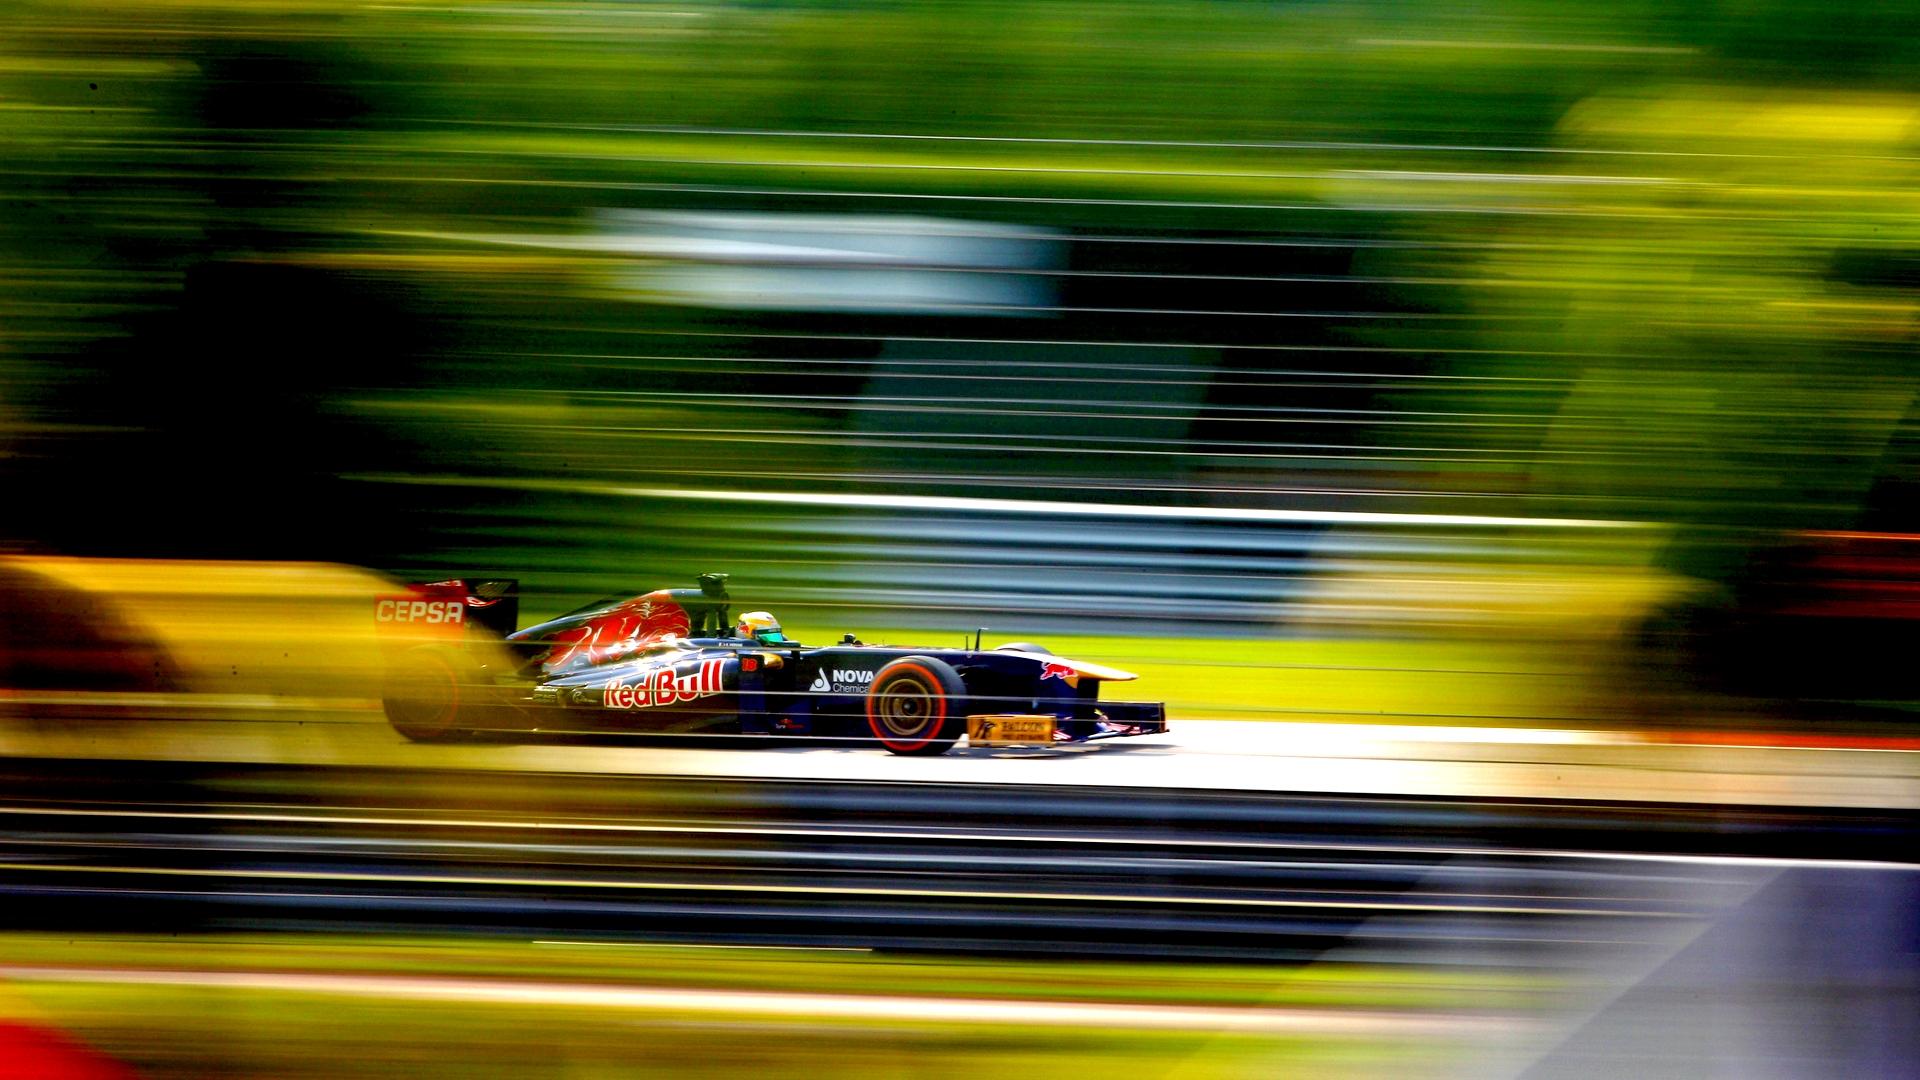 HD Formula Grand Prix Wallpaper